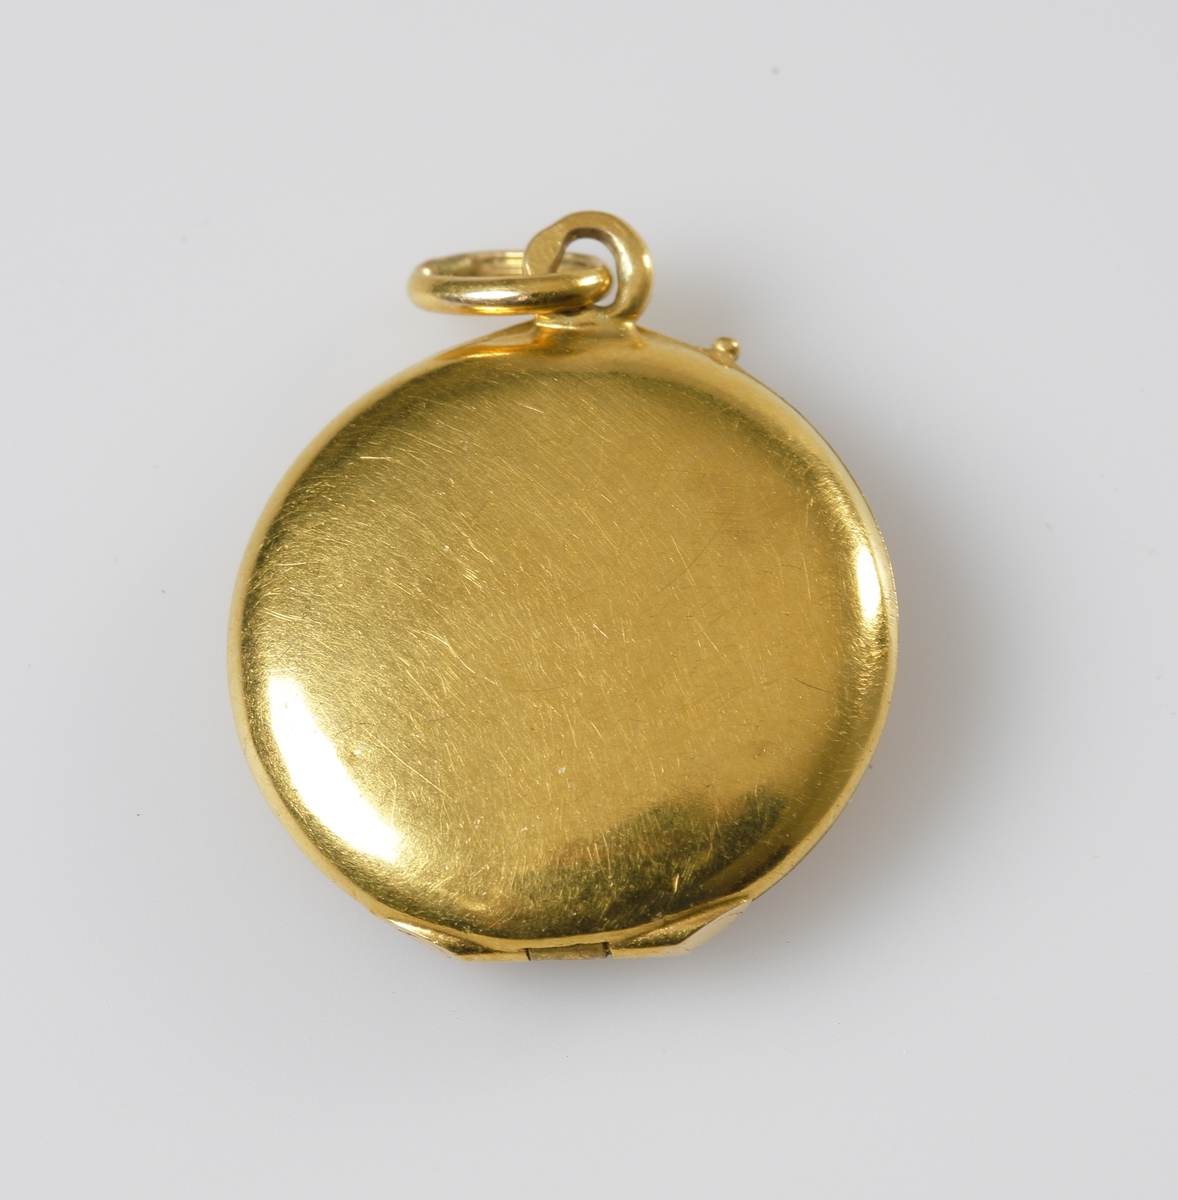 Öppningsbar berlock i 24K guld, med en infäst pärla på locket. Inne i berlocken en pappersguldstjärna.